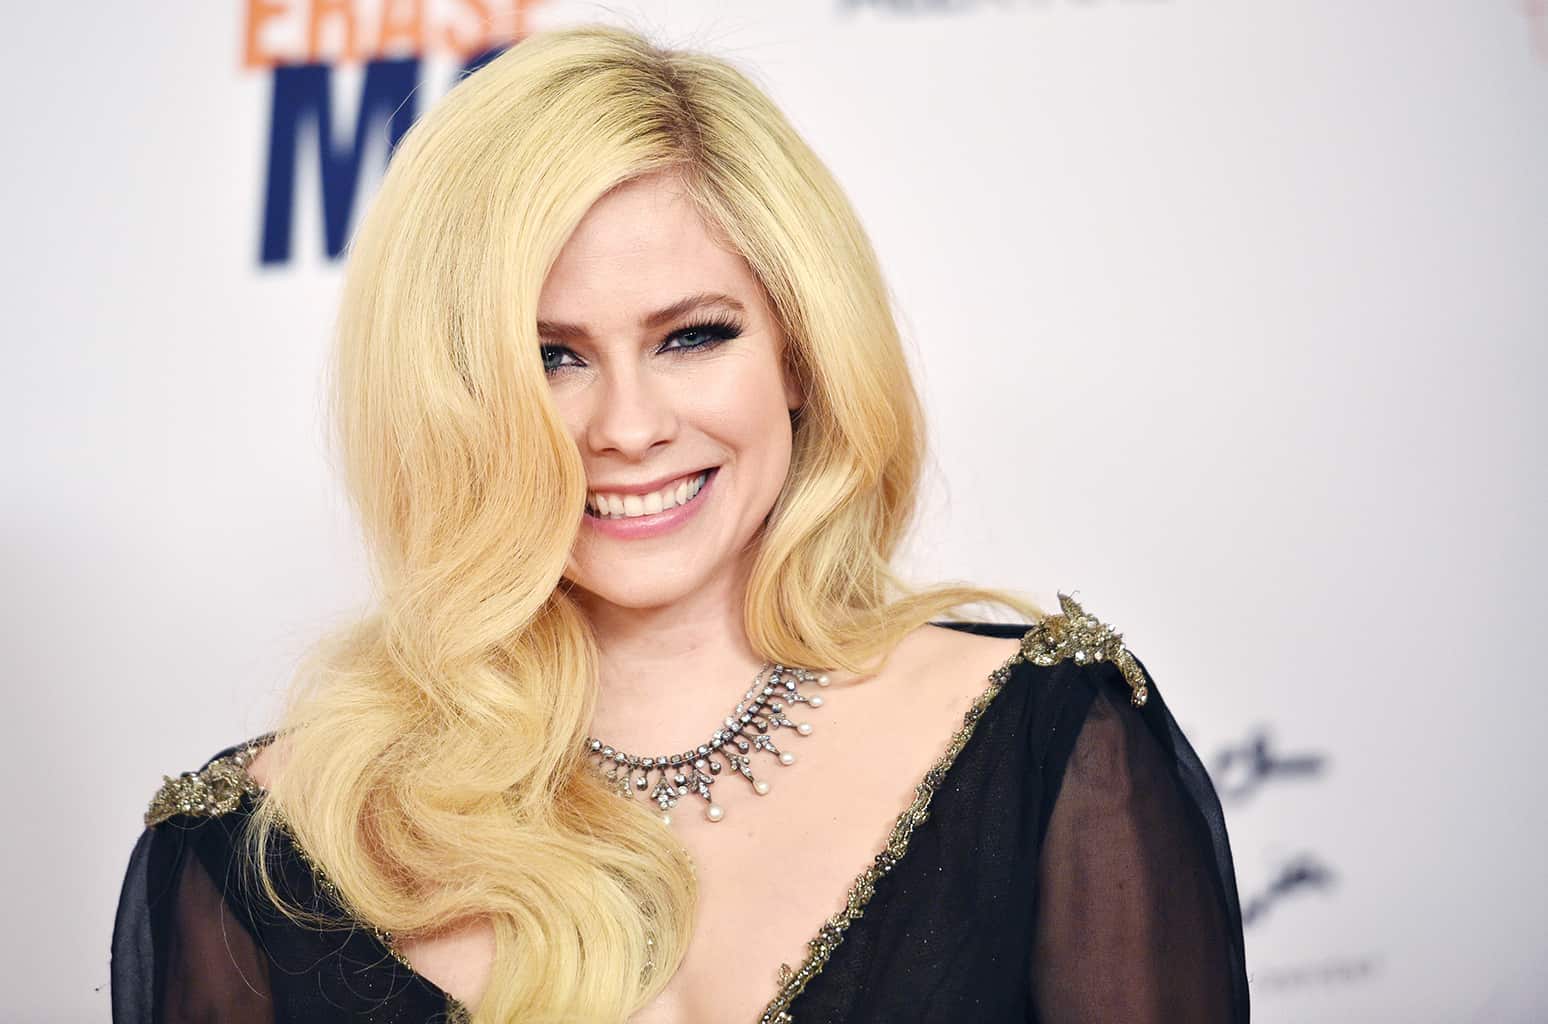 Mengungkap Lyme Disease, Penyakit yang Mengubah Hidup Avril Lavigne